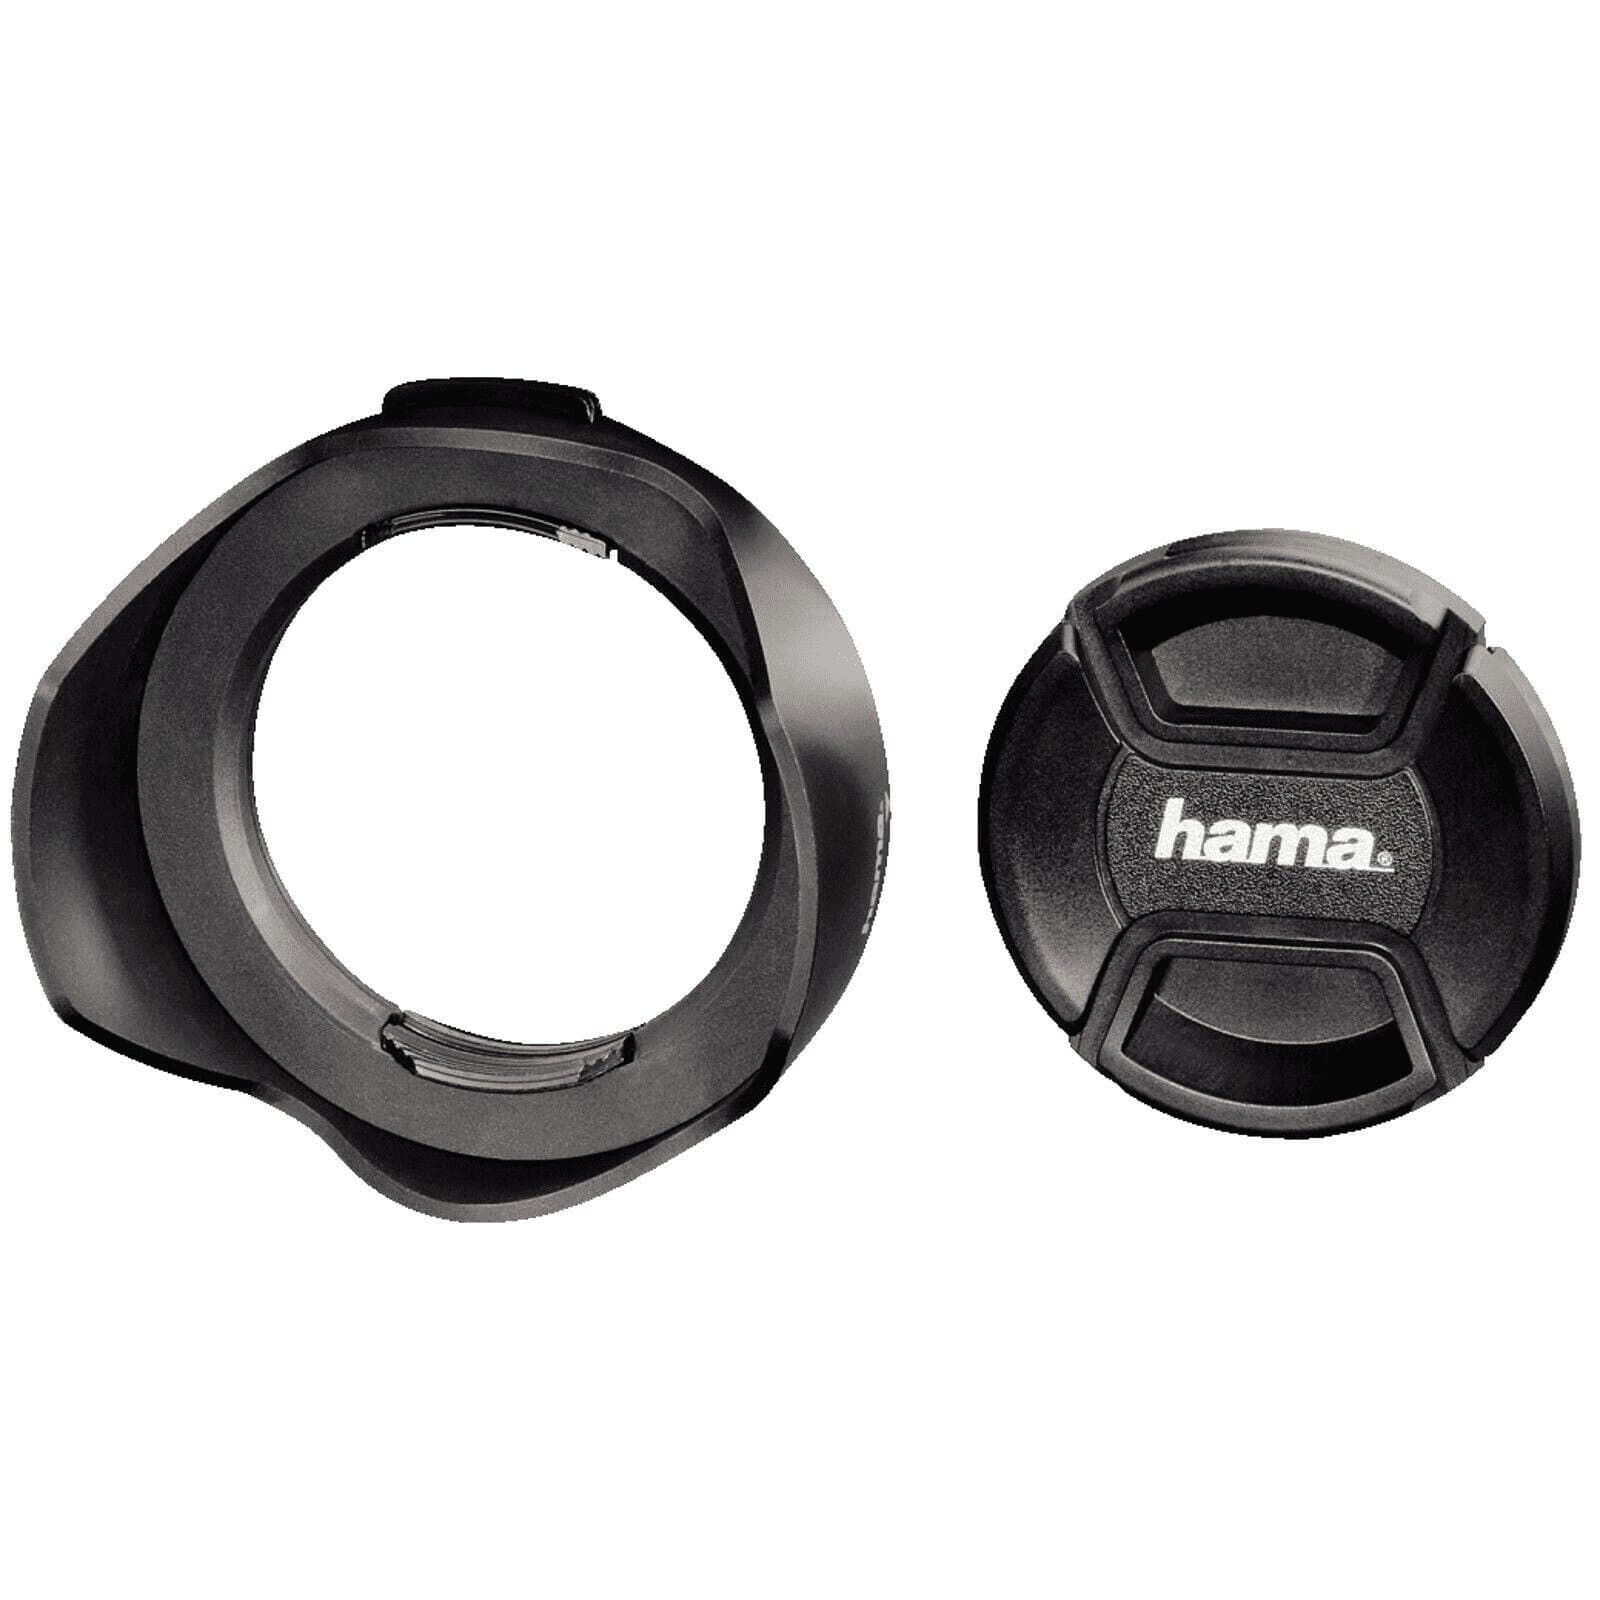 Hama Gegenlichtblende universal mit Objektivdeckel 55mm